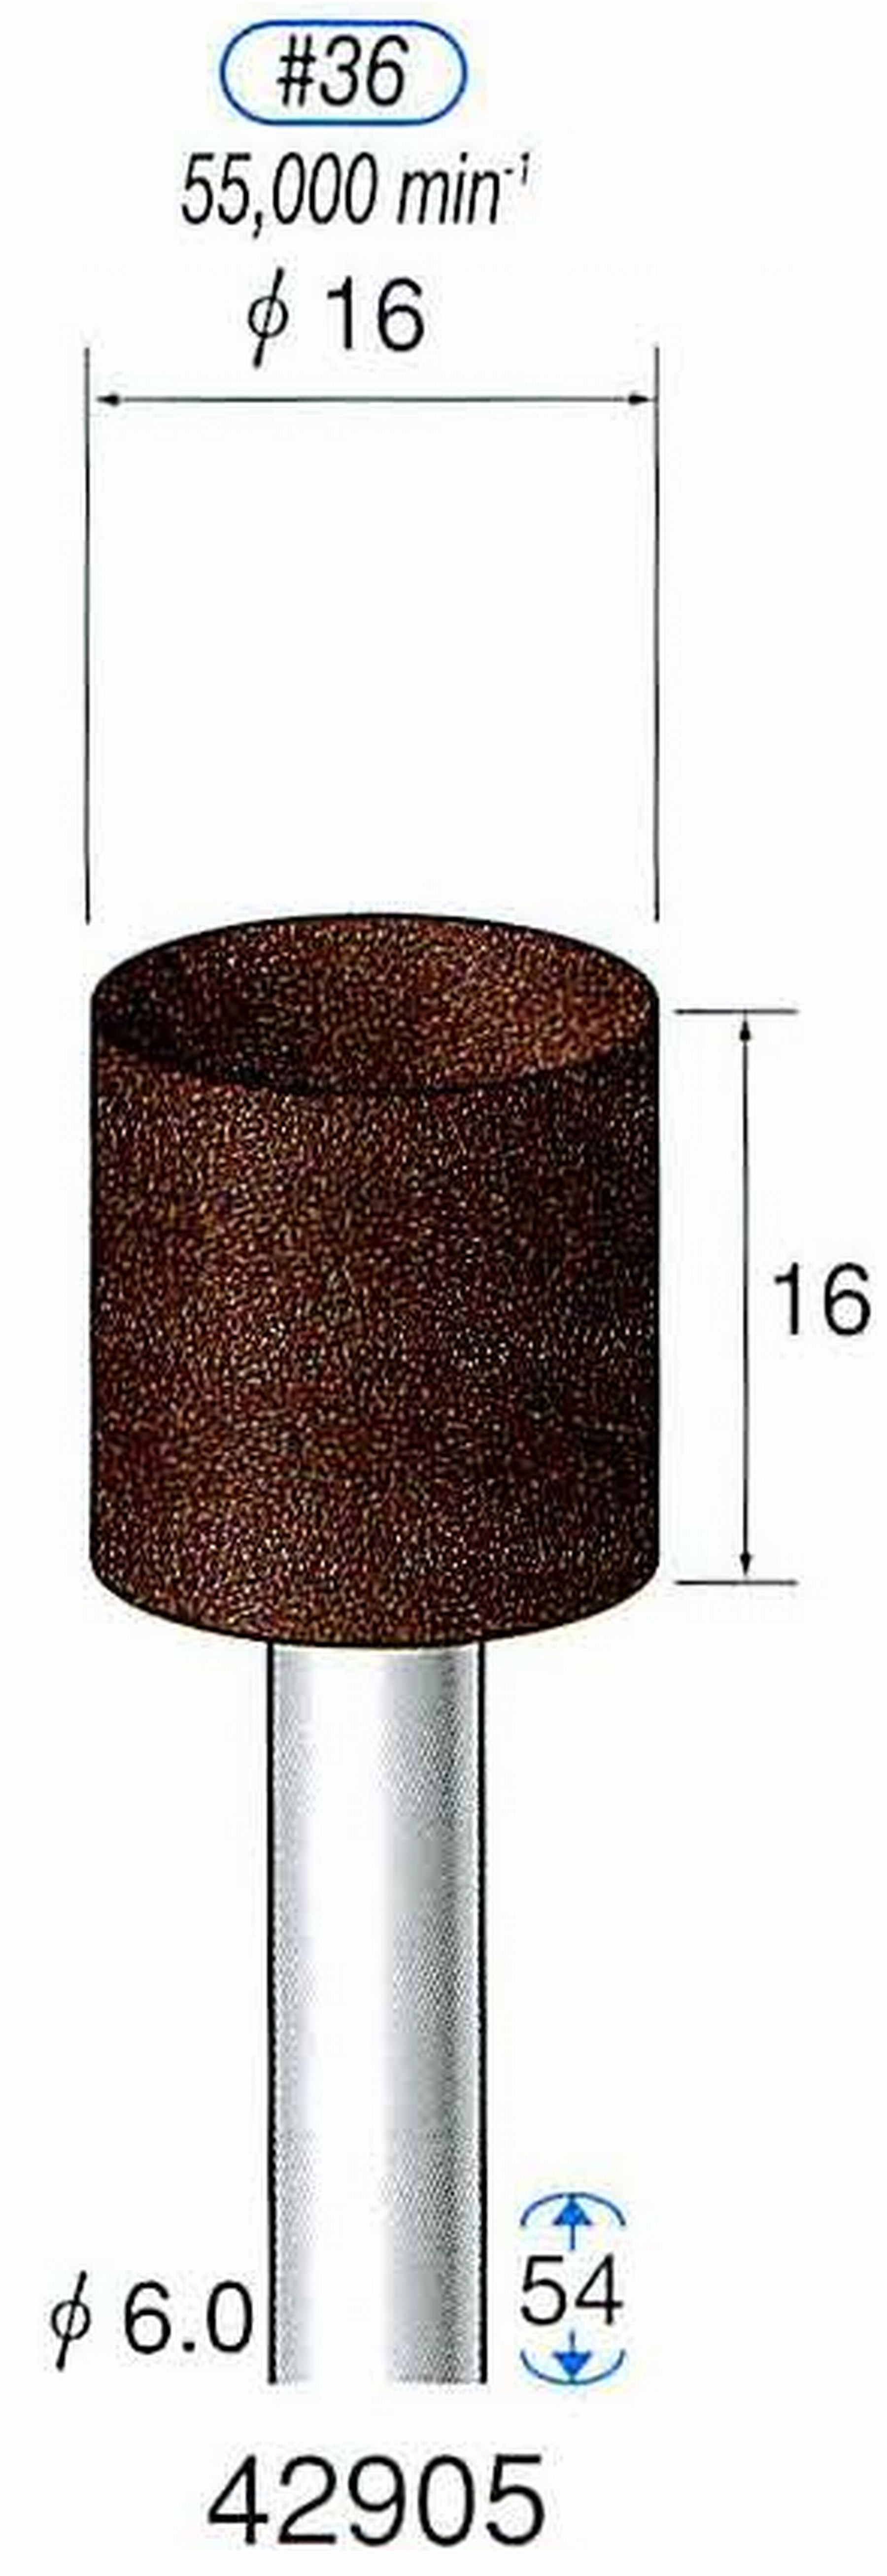 ナカニシ/NAKANISHI 軸付砥石(A・WA砥粒) ブラウン砥石 軸径(シャンク) φ6.0mm 42905